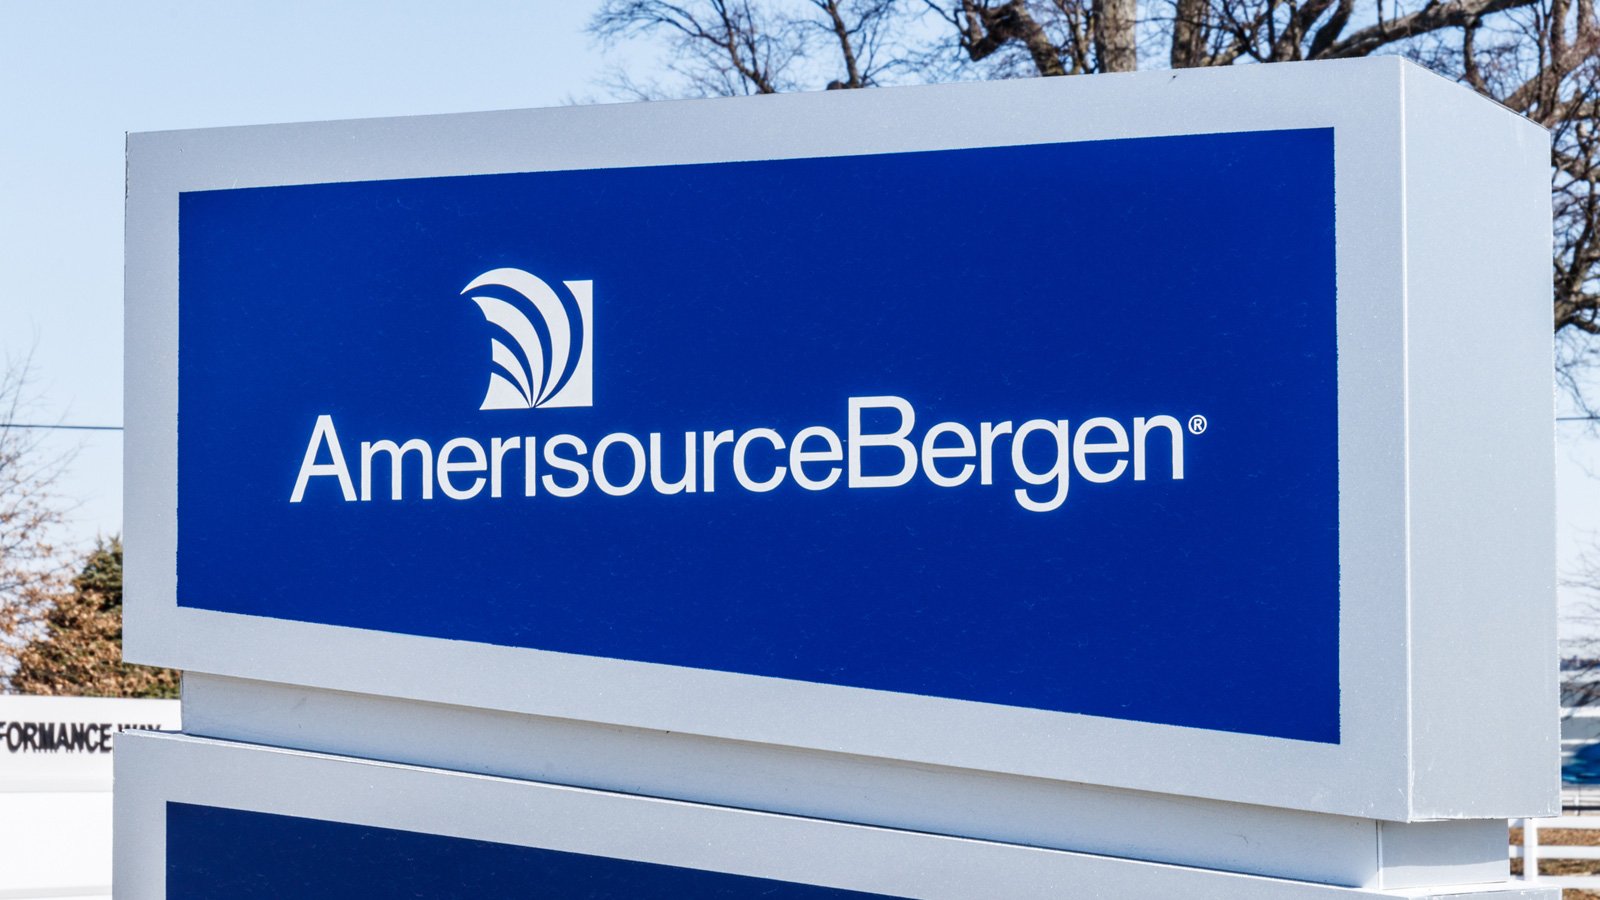 药品分销商 AmerisourceBergen 确认存在安全漏洞